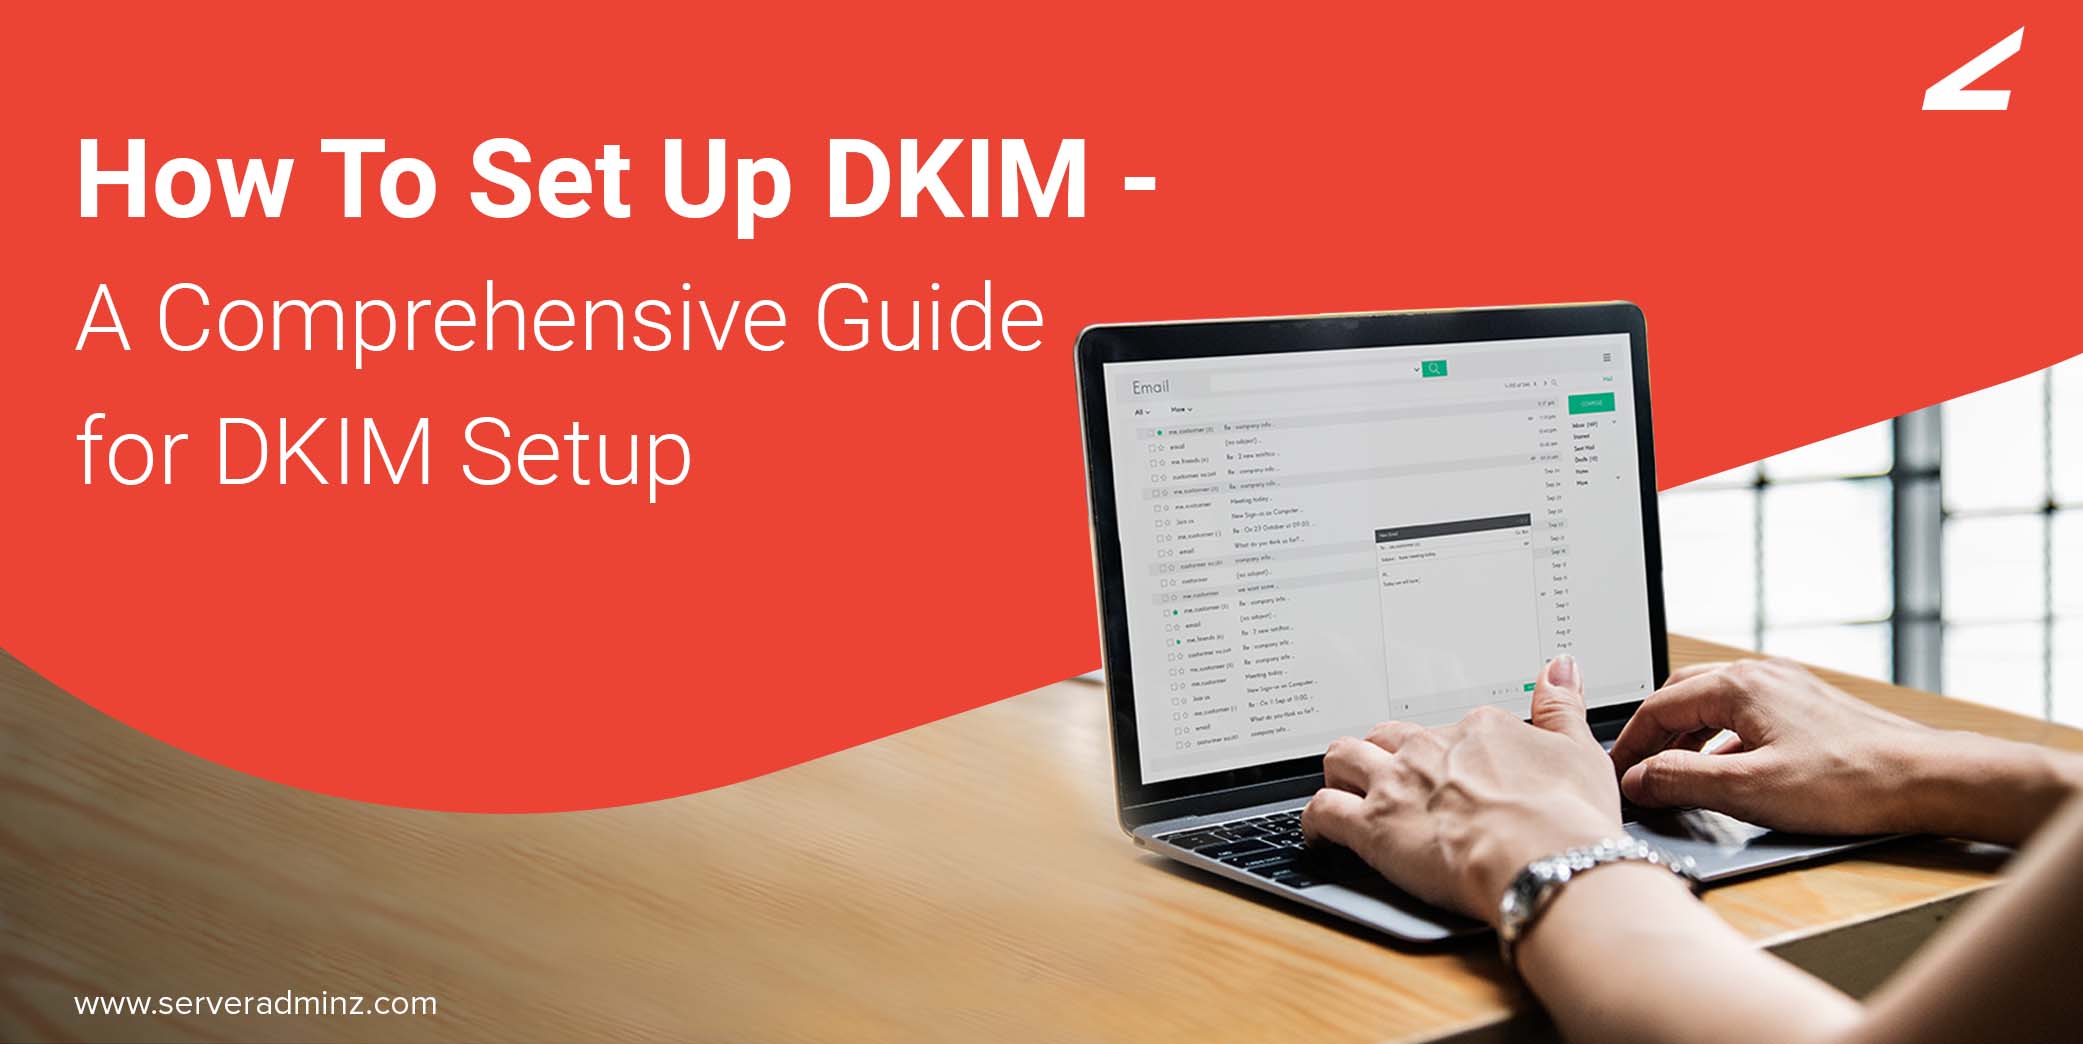 How To Set Up DKIM - A Comprehensive Guide for DKIM Setup